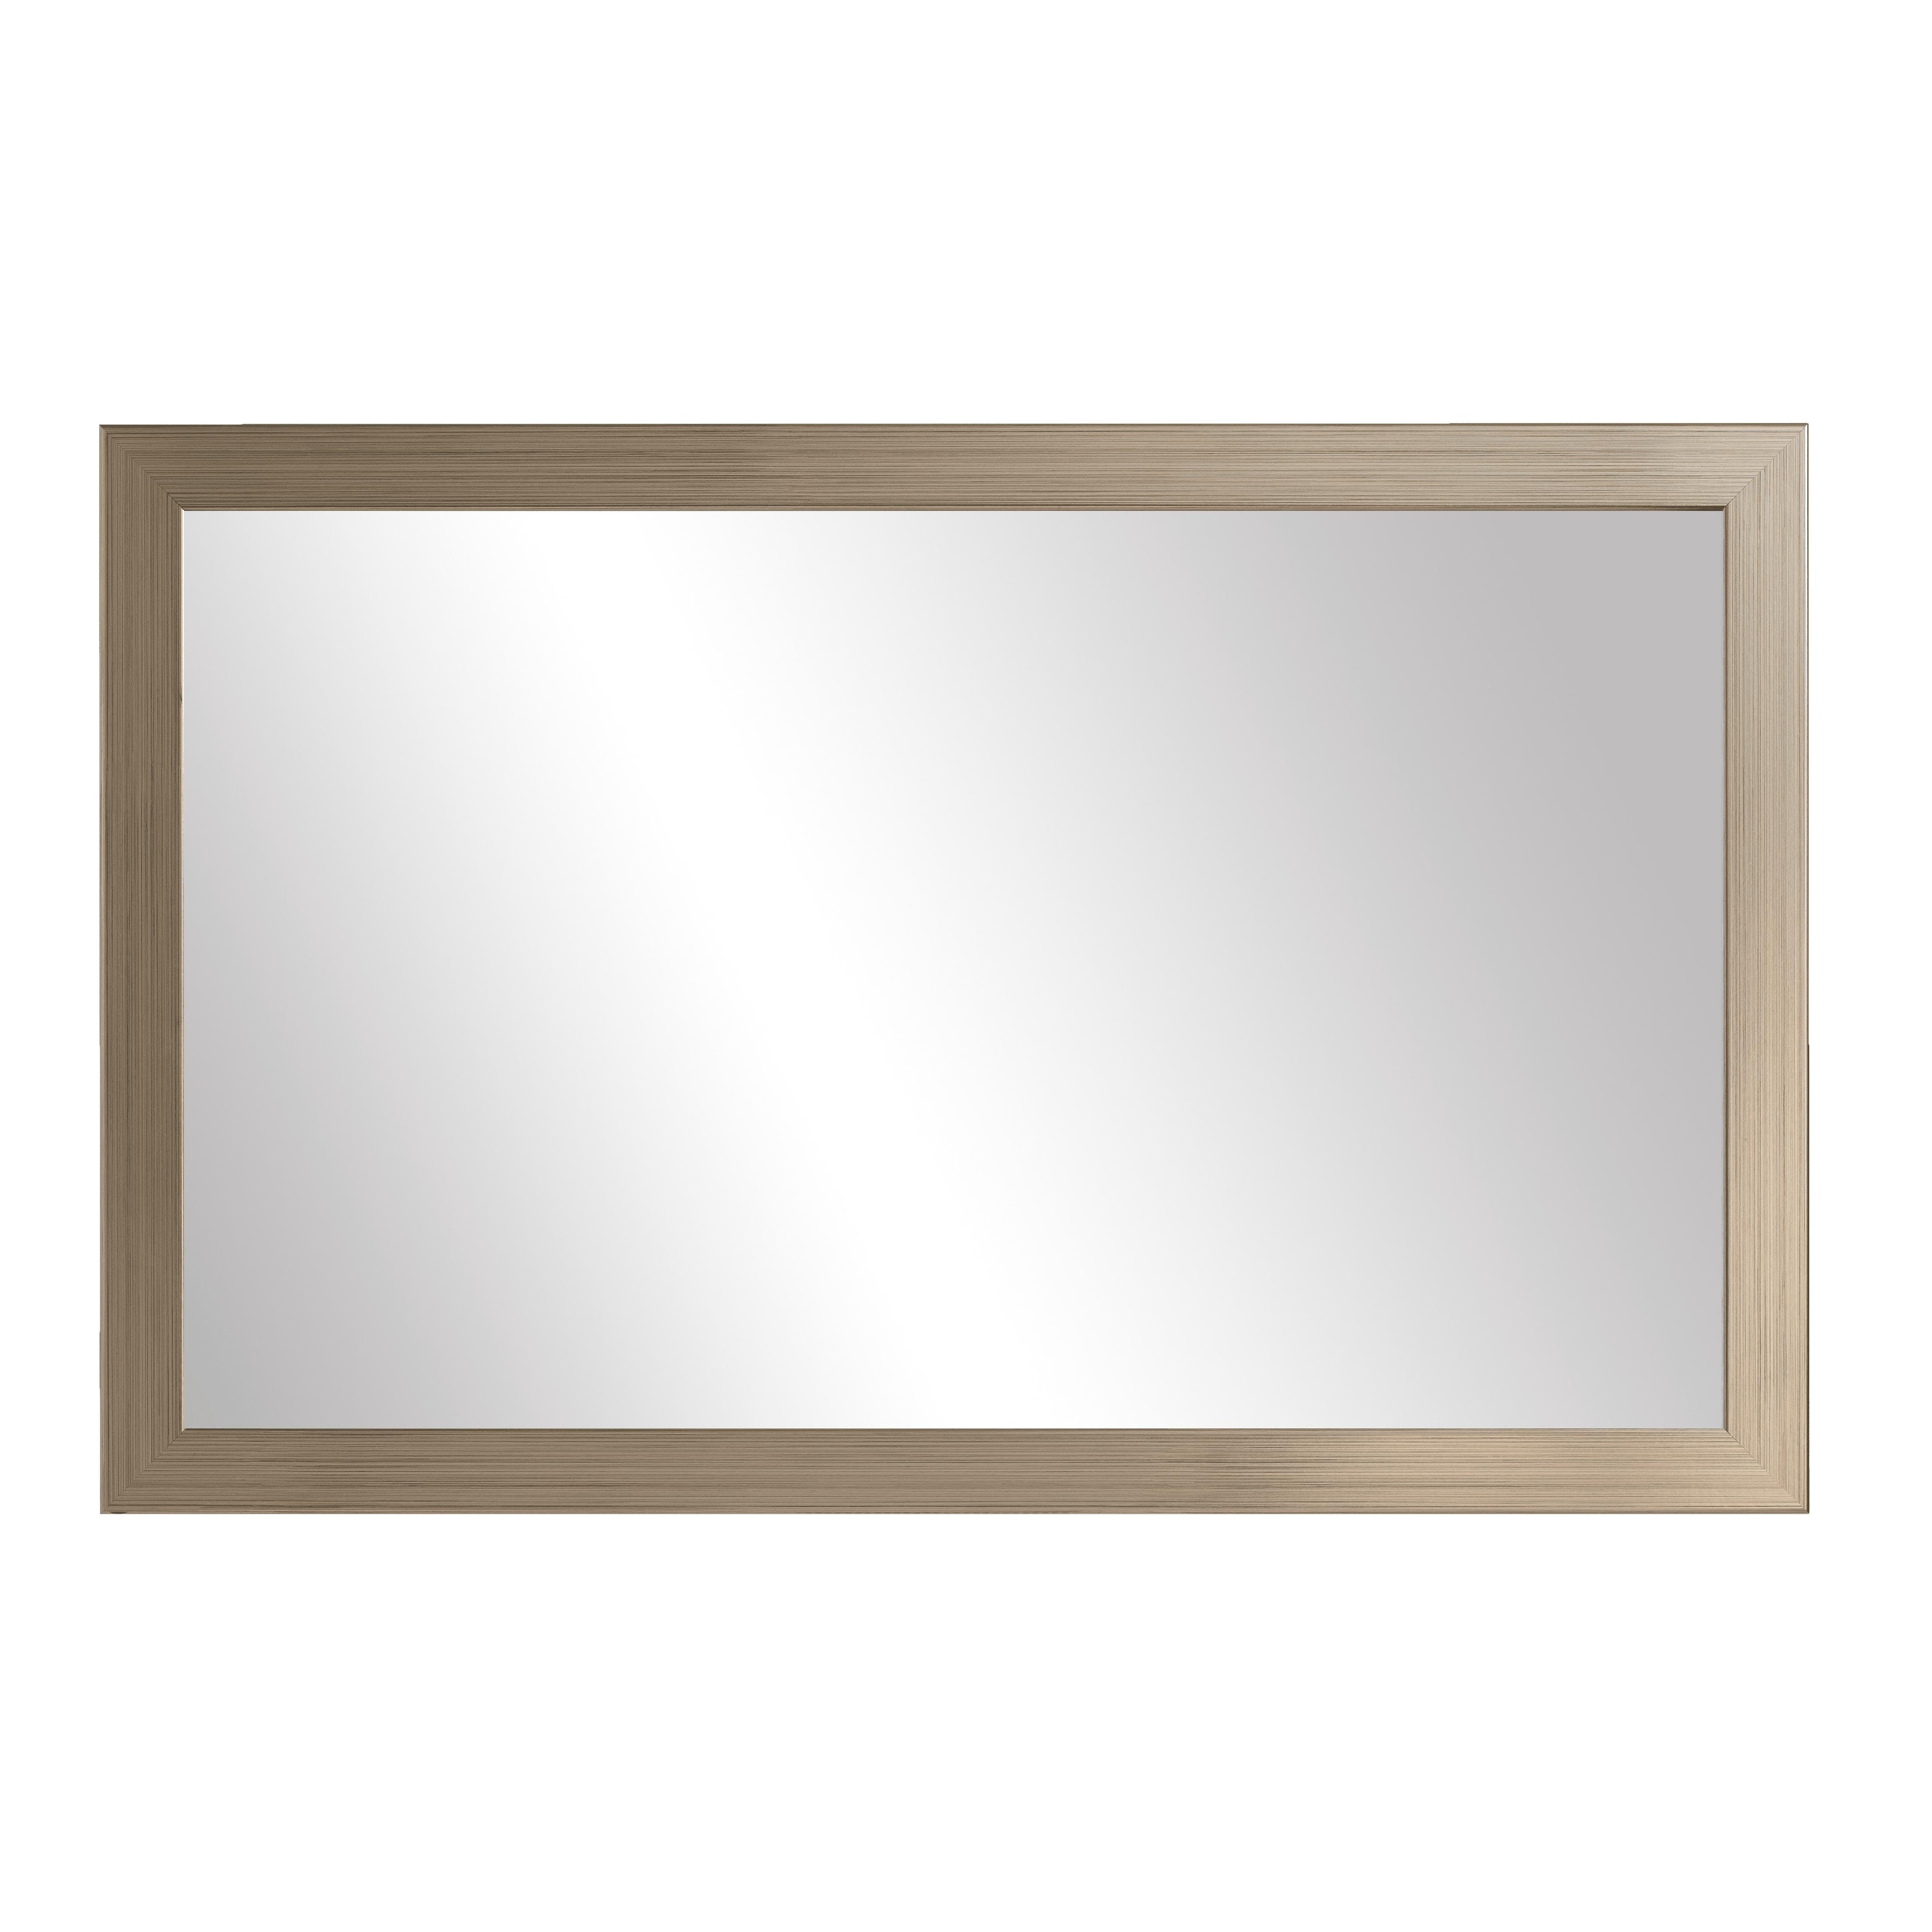 Meade Aged Nickel Framed Mirror